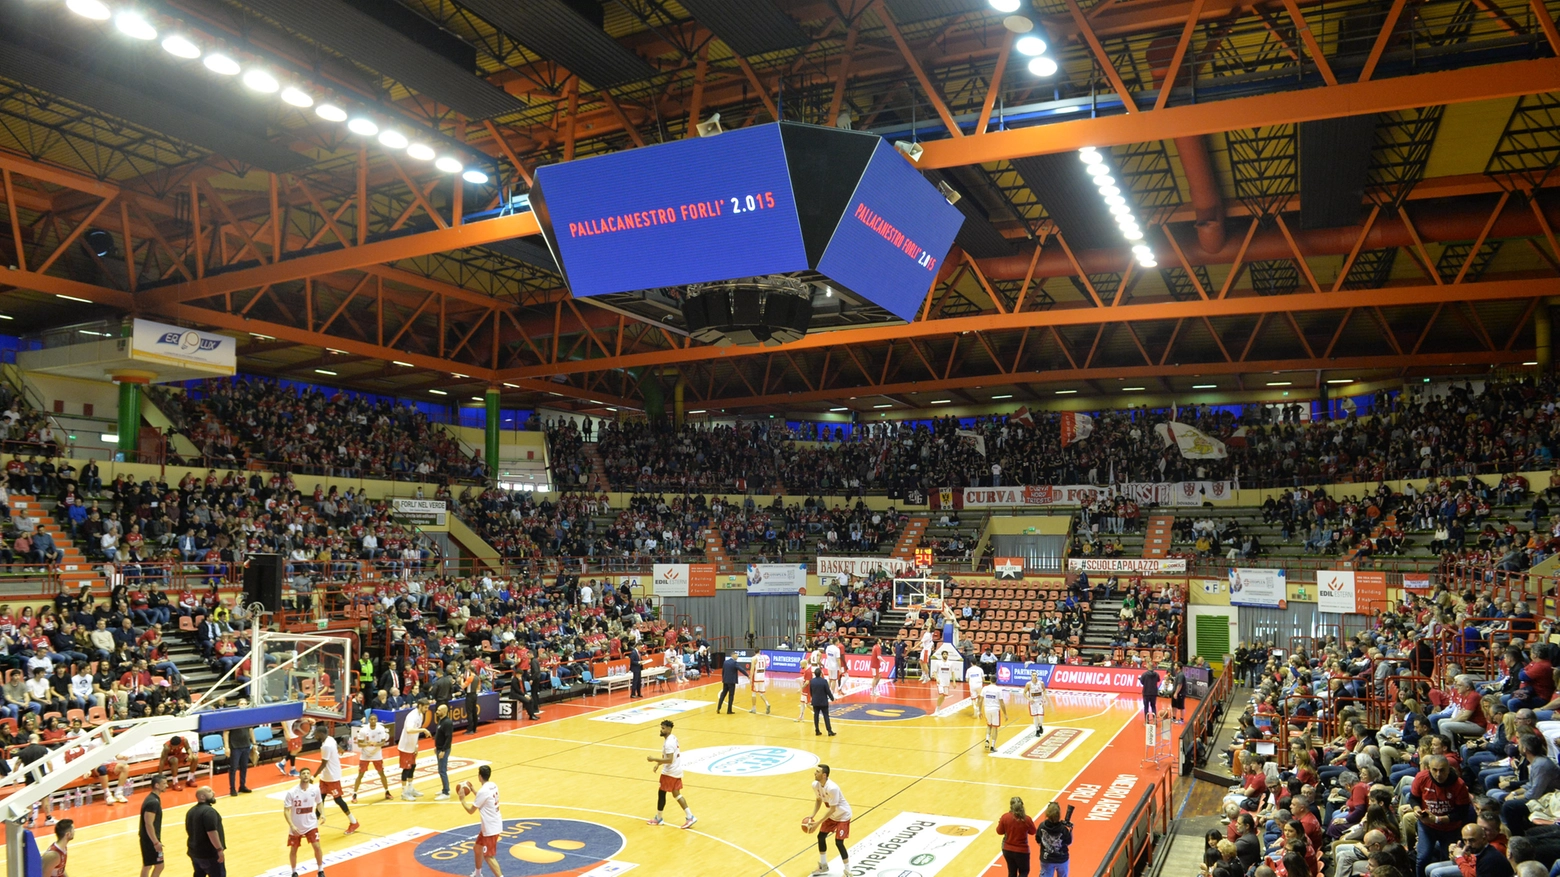 Alluvione a Forlì, il Palafiera è occupato dalla Protezione civile: basket, si cerca casa per le semifinali playoff